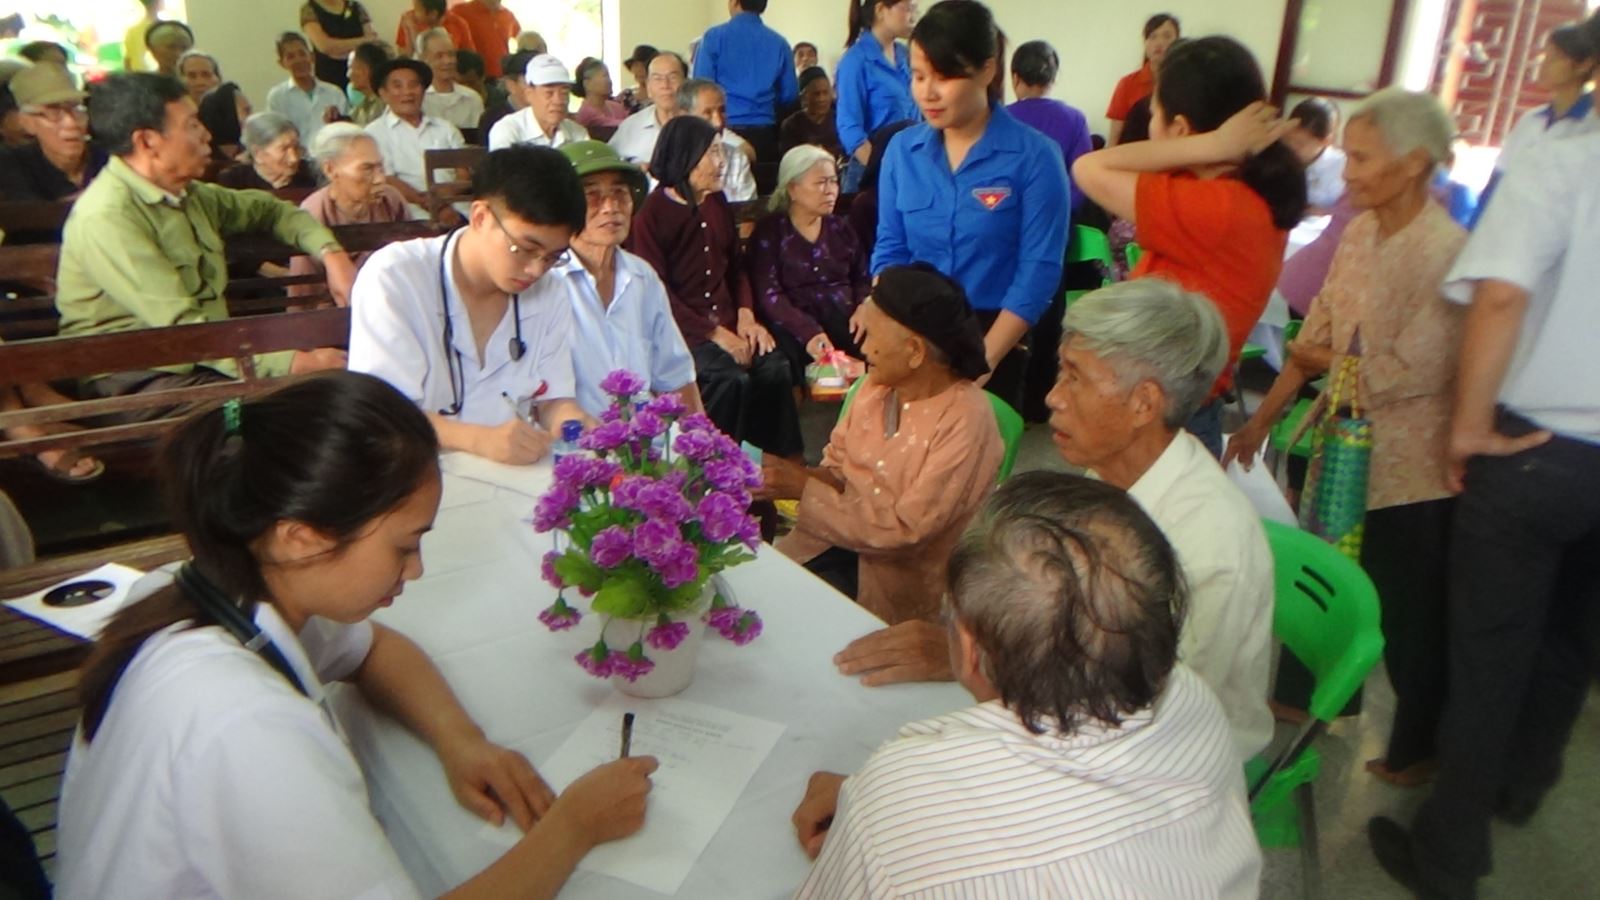 Câu lạc bộ Thầy thuốc trẻ Bệnh viện đa khoa tỉnh Bắc Ninh phối hợp với Đoàn thanh niên tỉnh Bắc Ninh khám, tư vấn sức khỏe và phát thuốc miễn phí cho các đối tượng chính sách huyện Yên Phong, tỉnh Bắc Ninh